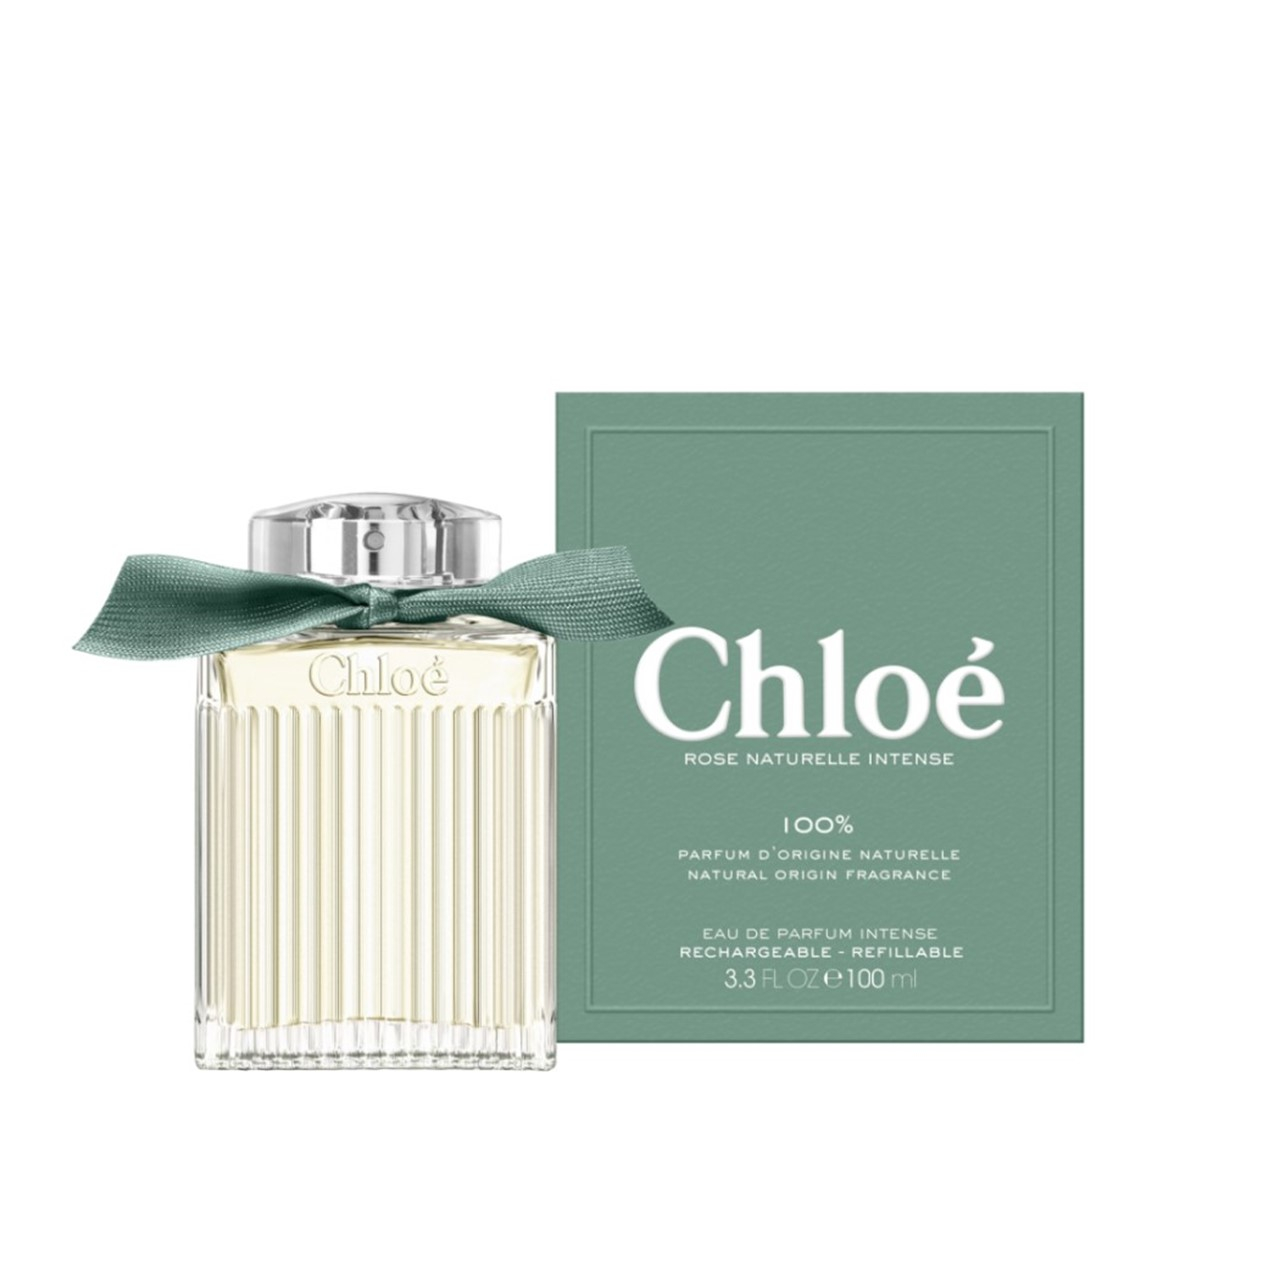 Chloé Rose Naturelle Intense Eau de Parfum 100ml (3.3 fl oz)